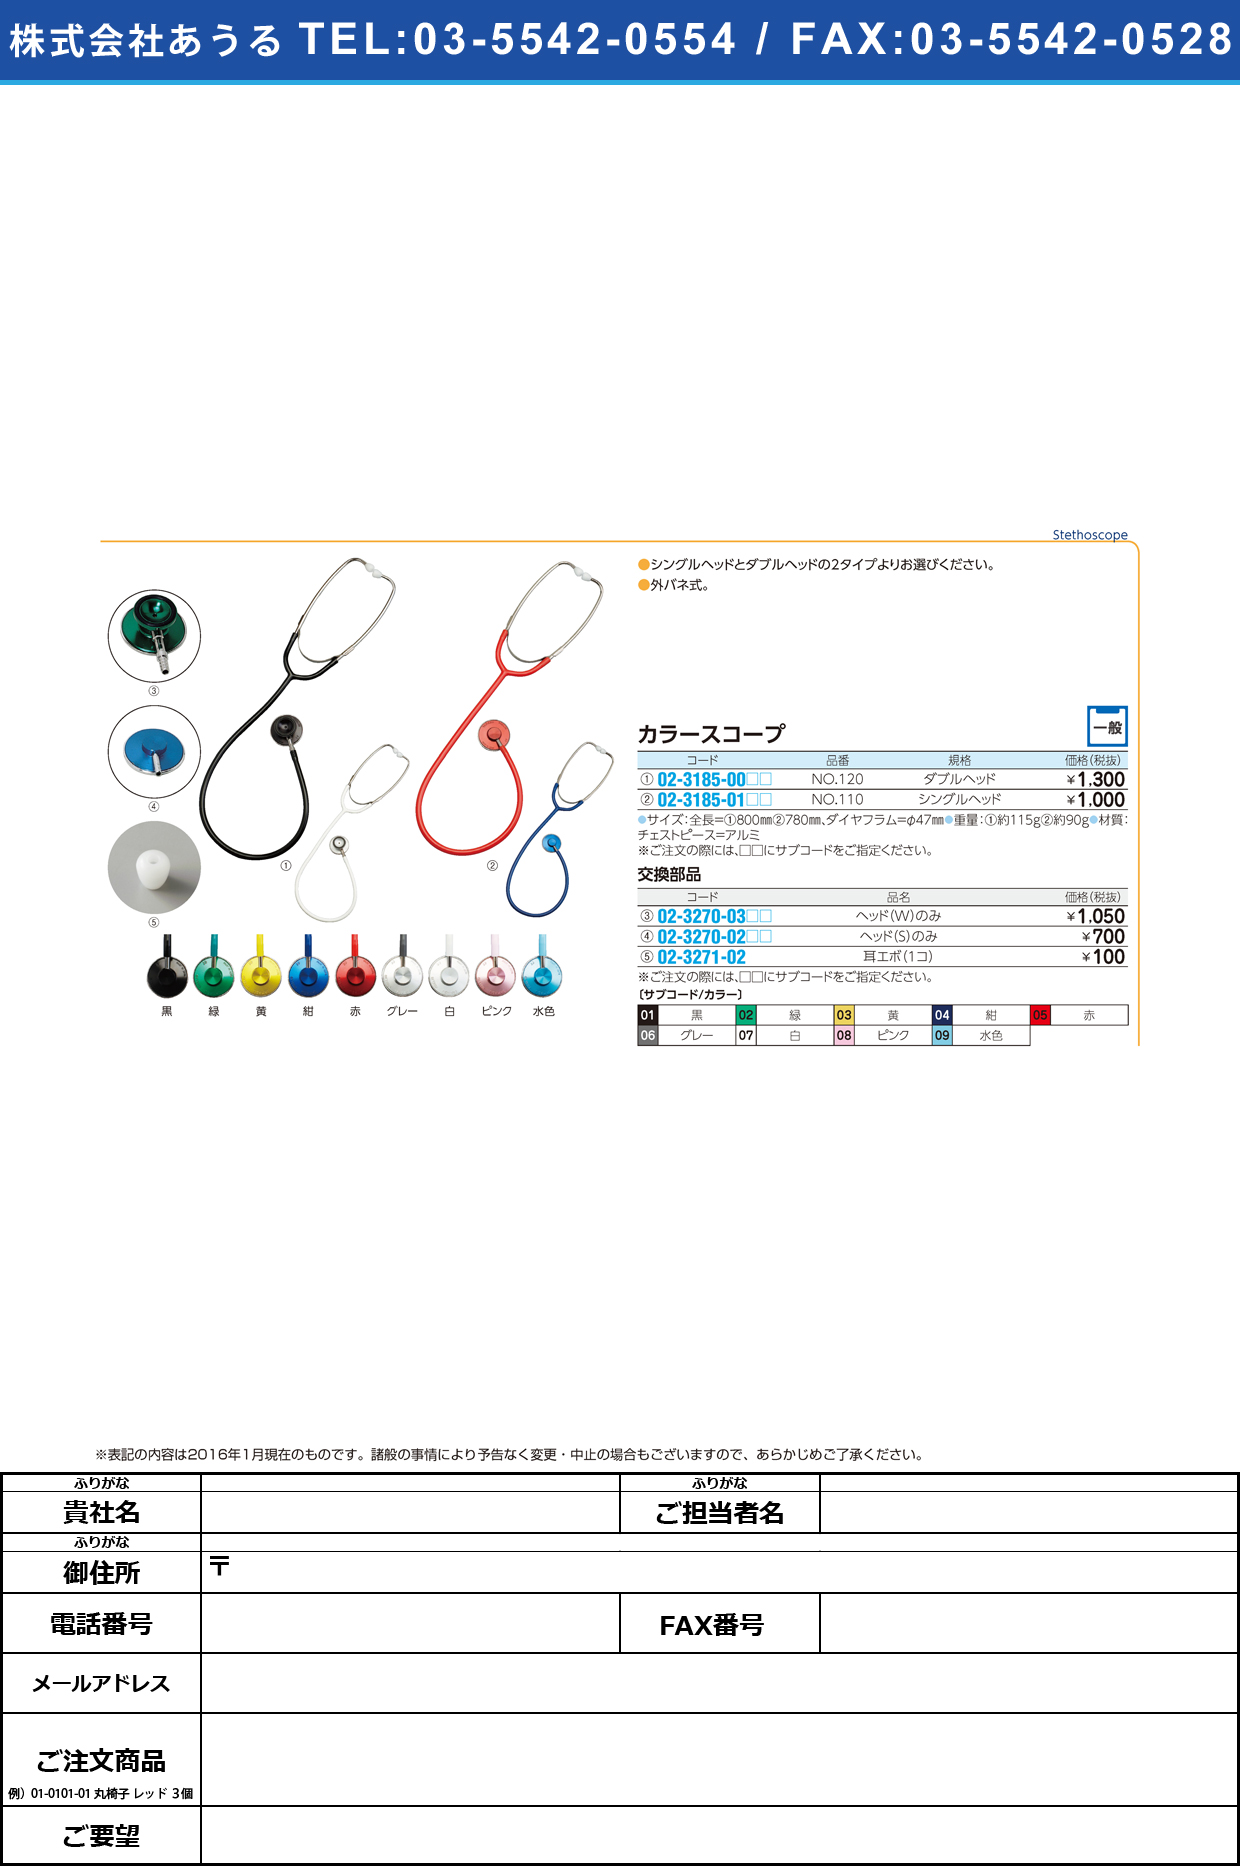 (02-3270-03)聴診器用ヘッド（カラースコープＷ用） ﾁｮｳｼﾝｷﾖｳﾍｯﾄﾞ(ｶﾗｰWﾖｳ) ﾀﾞﾌﾞﾙﾍｯﾄﾞ【1個単位】【2016年カタログ商品】